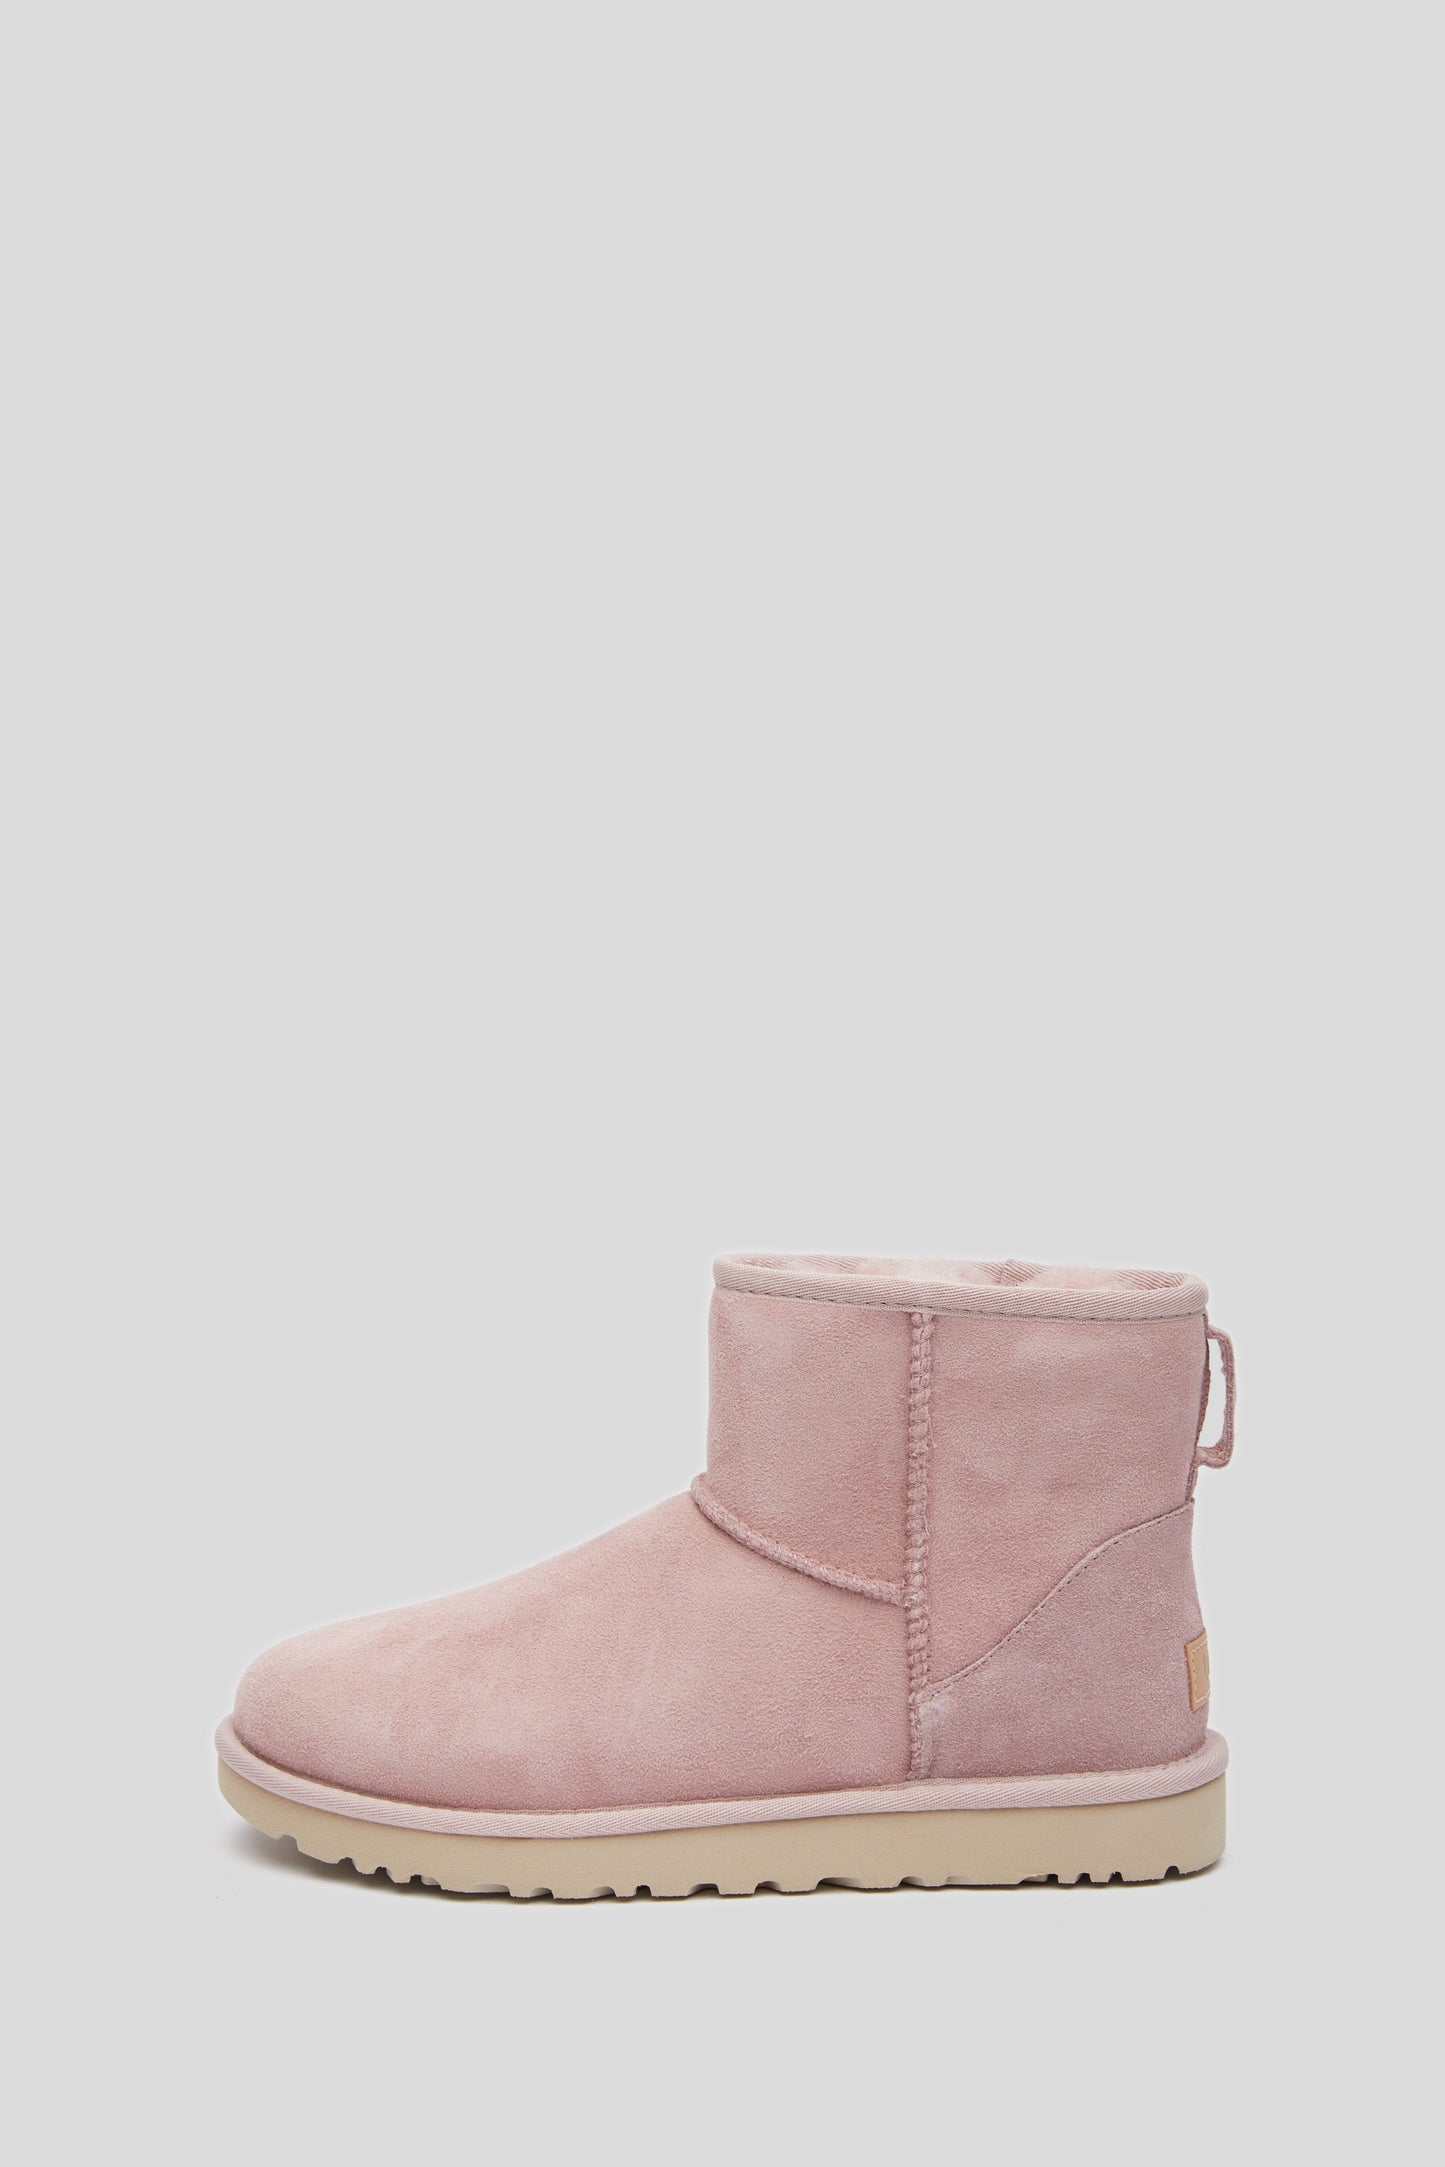 UGG Boots "Classic Mini II" Pink